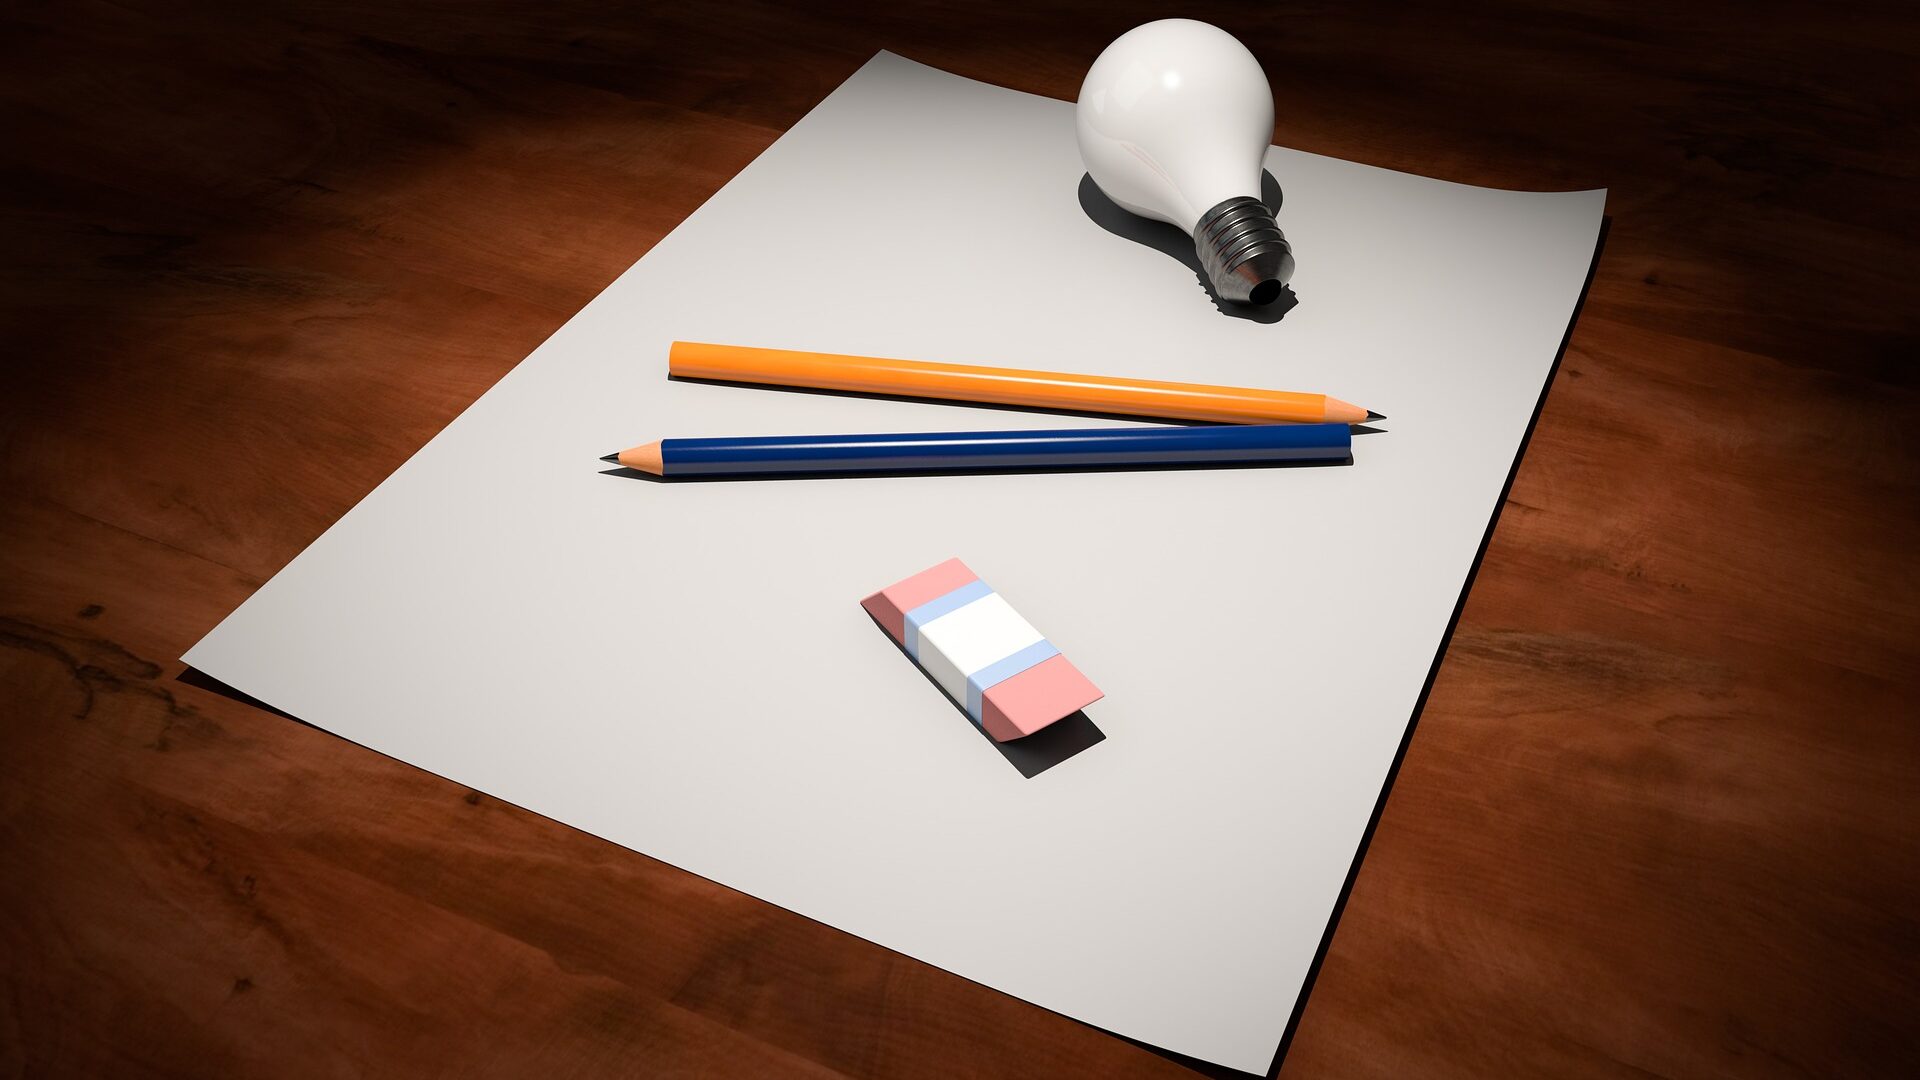 foglio bianco su una scrivania di legno con sopra due matite, una gomma e una lampadina